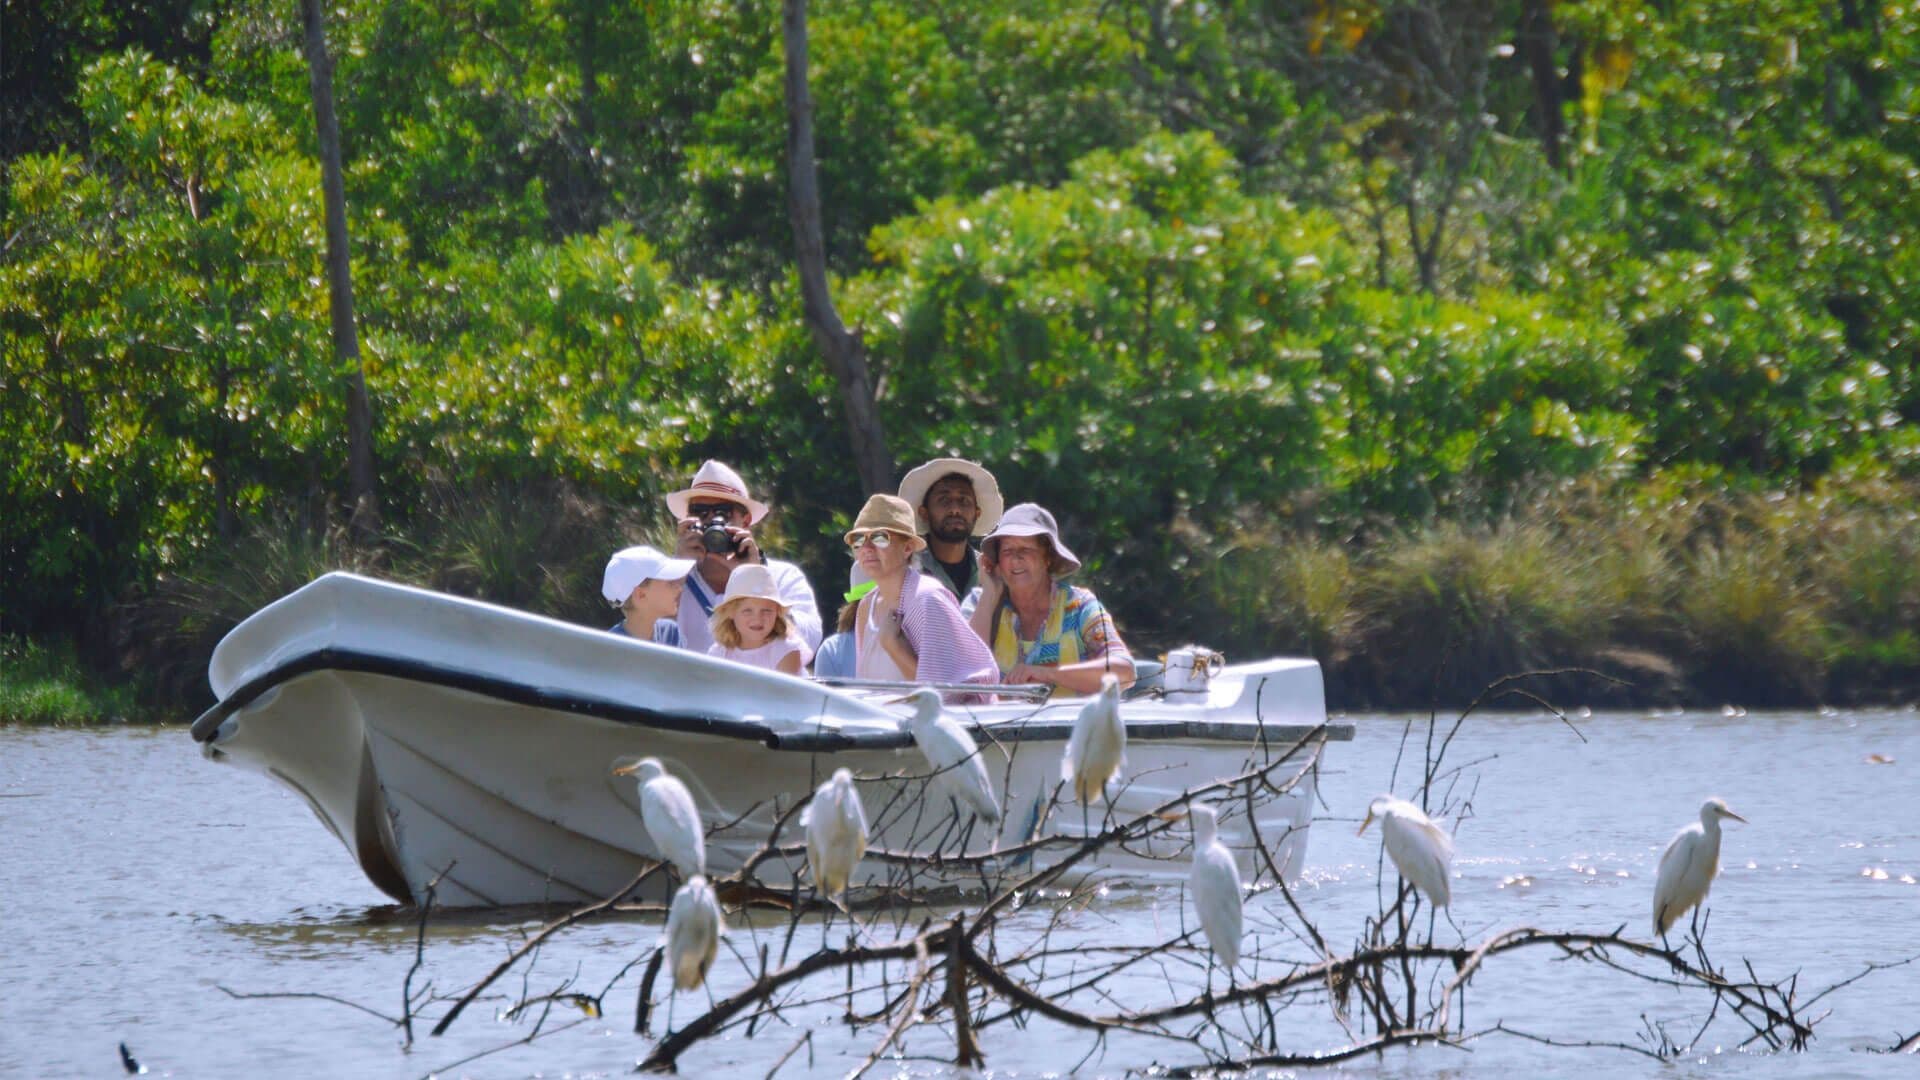 منظر لمجموعة من السائحين السعداء يلتقطون بعض الصور في طبيعة نهر بينتوتا